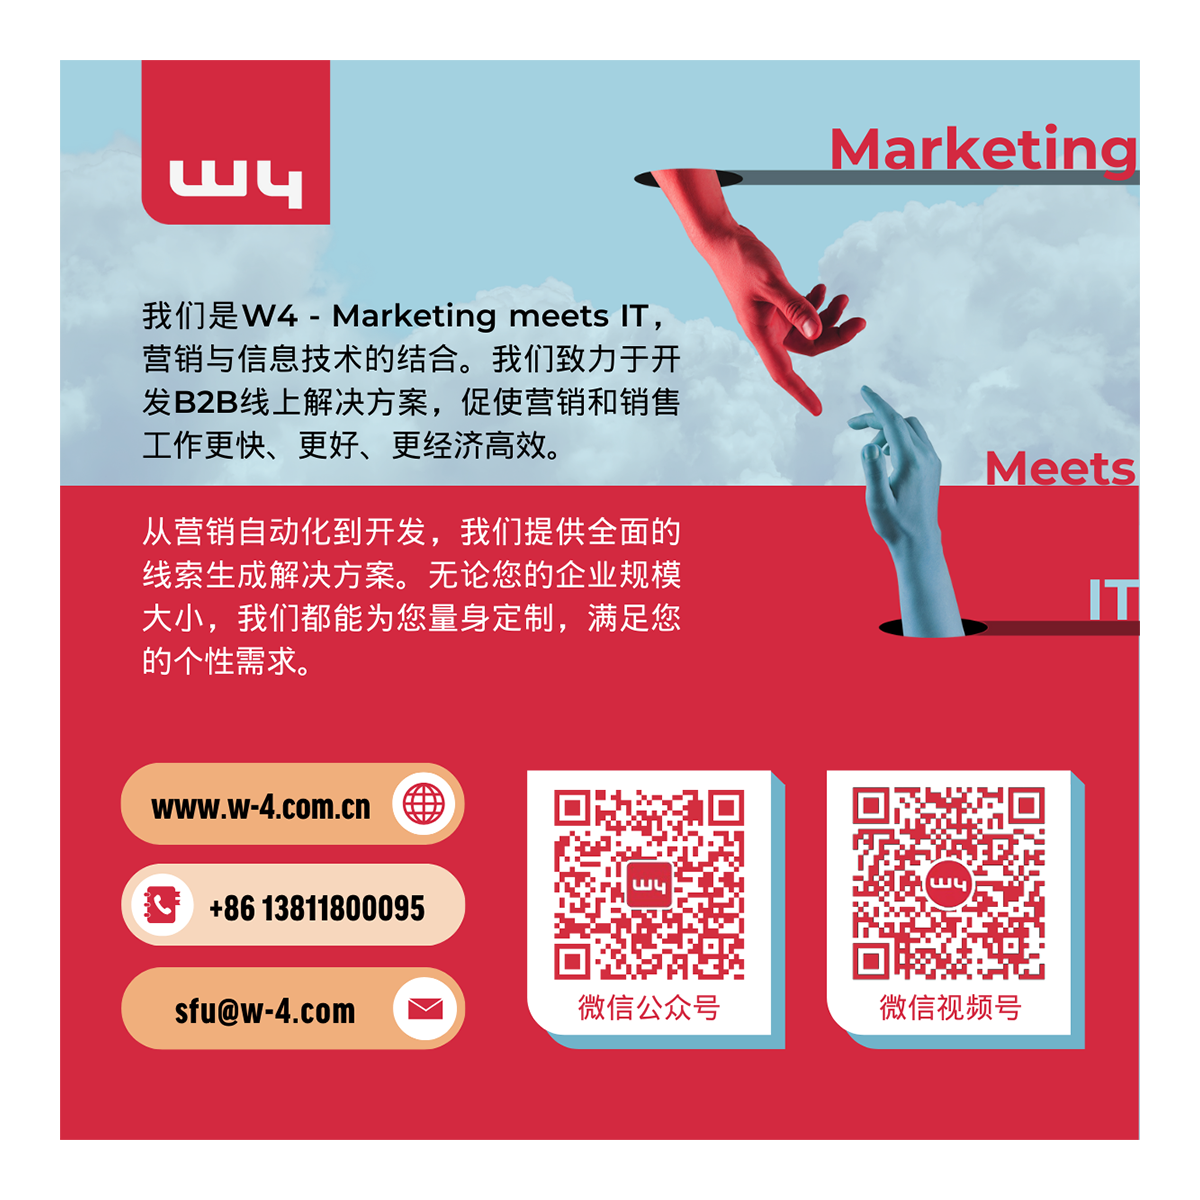 marketingblatt cn footer-1